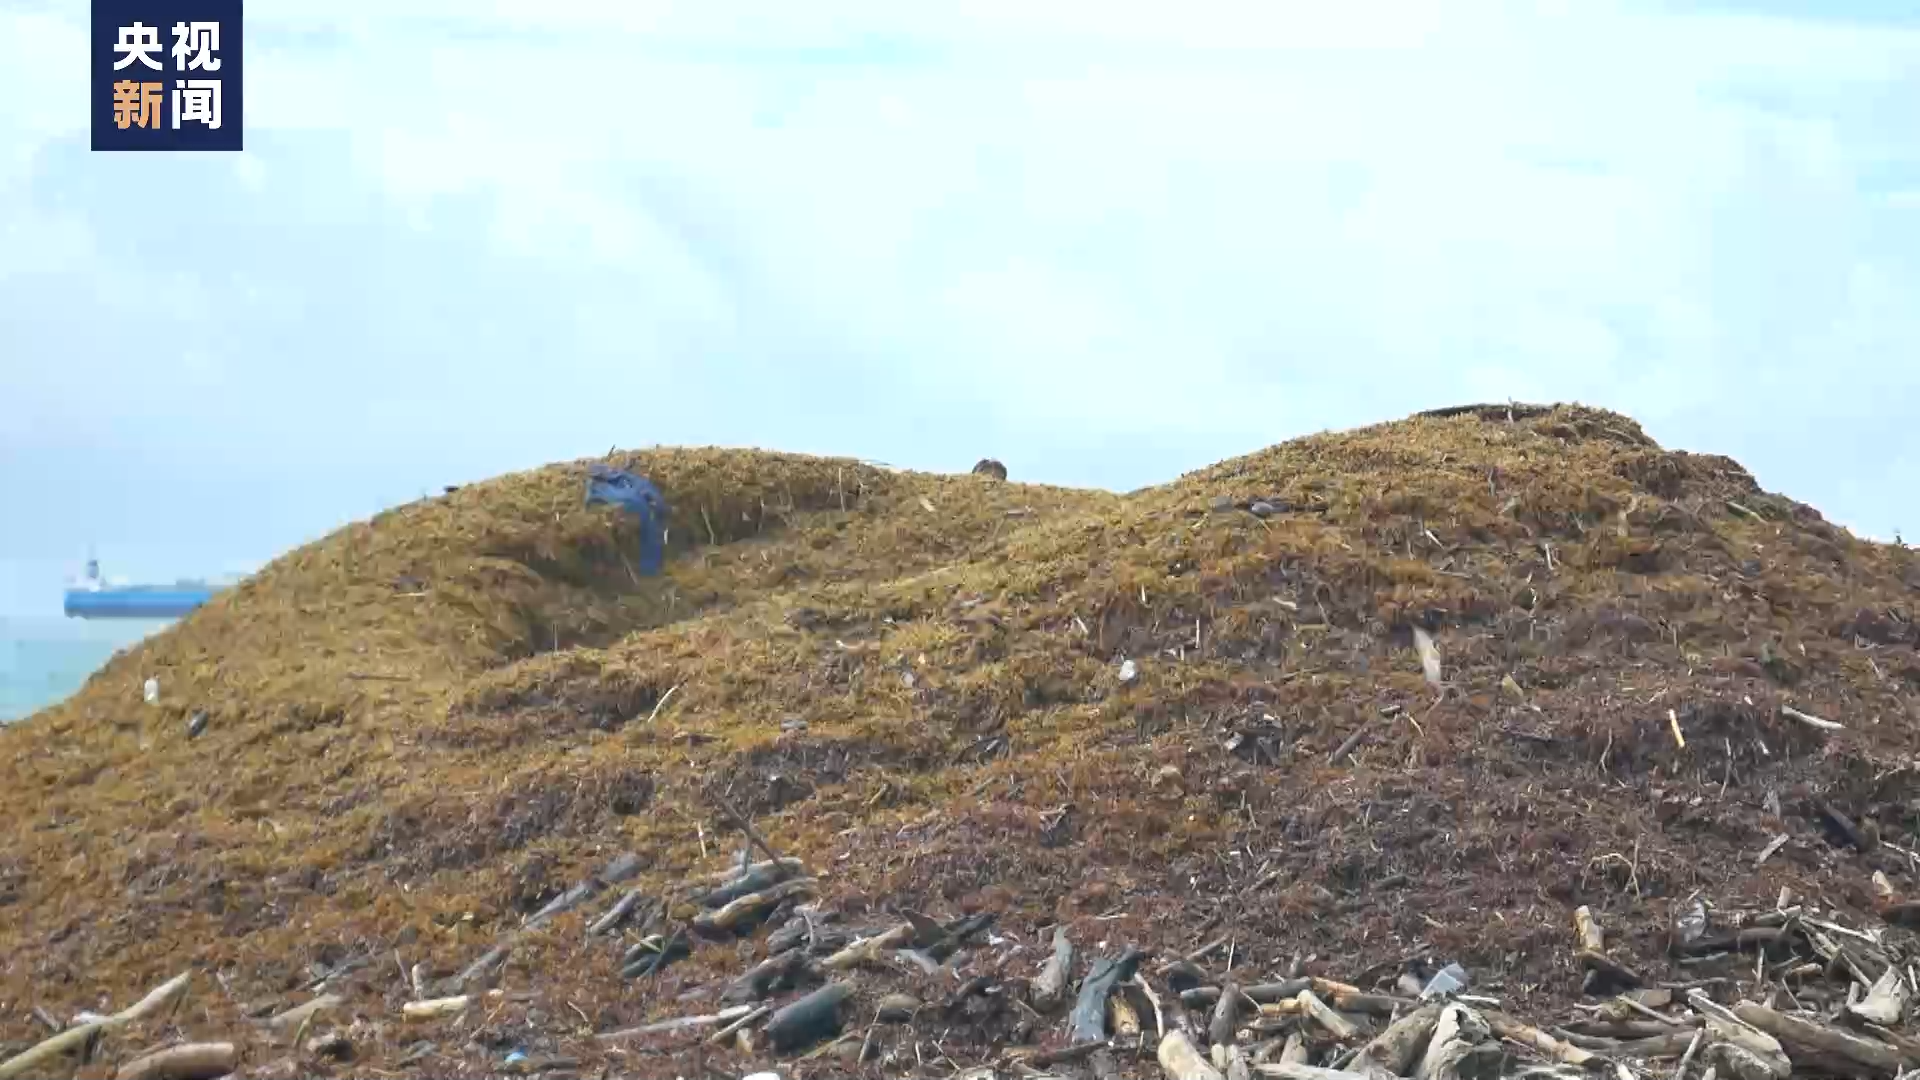 马尾藻过度繁殖 多米尼加生态旅游业受损